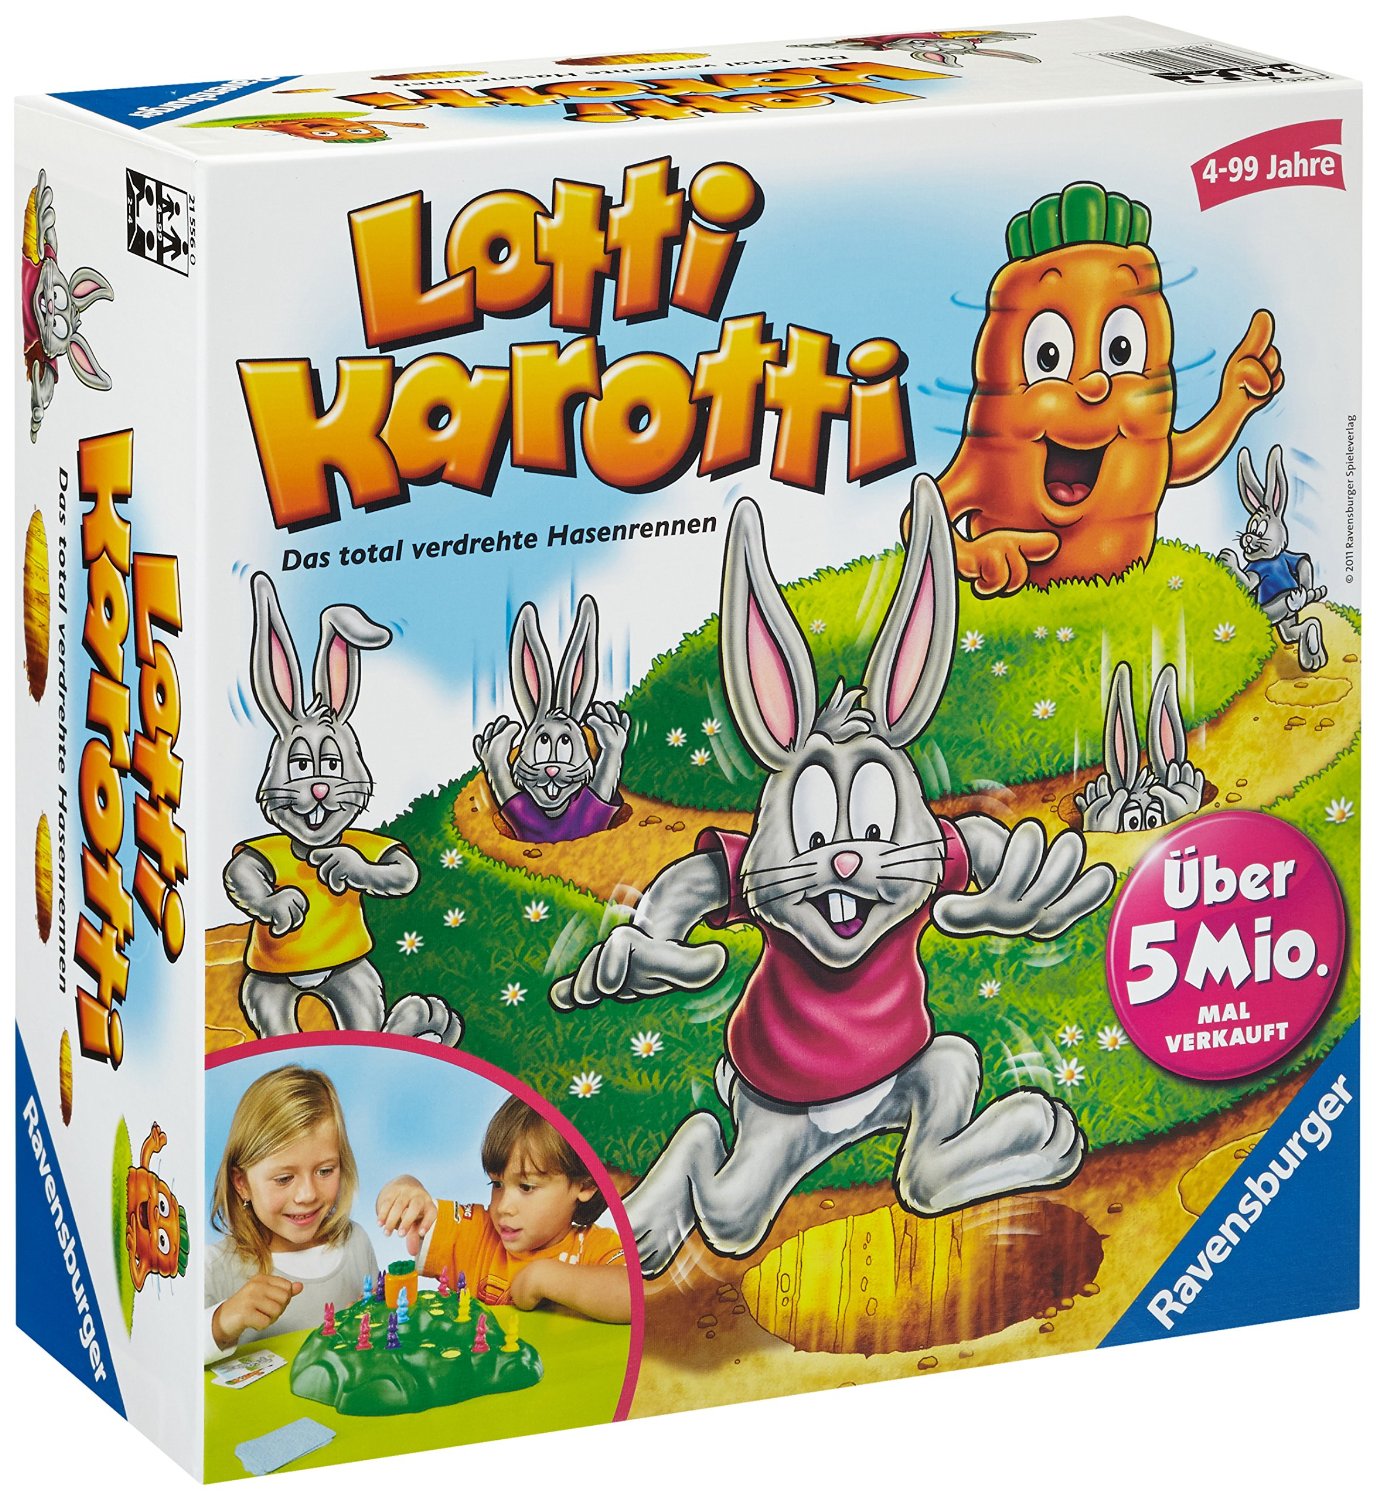 spiele für 4 jährige kinder halli galli lotti karotti ravensburger coole spiele spiele für 3 jährige